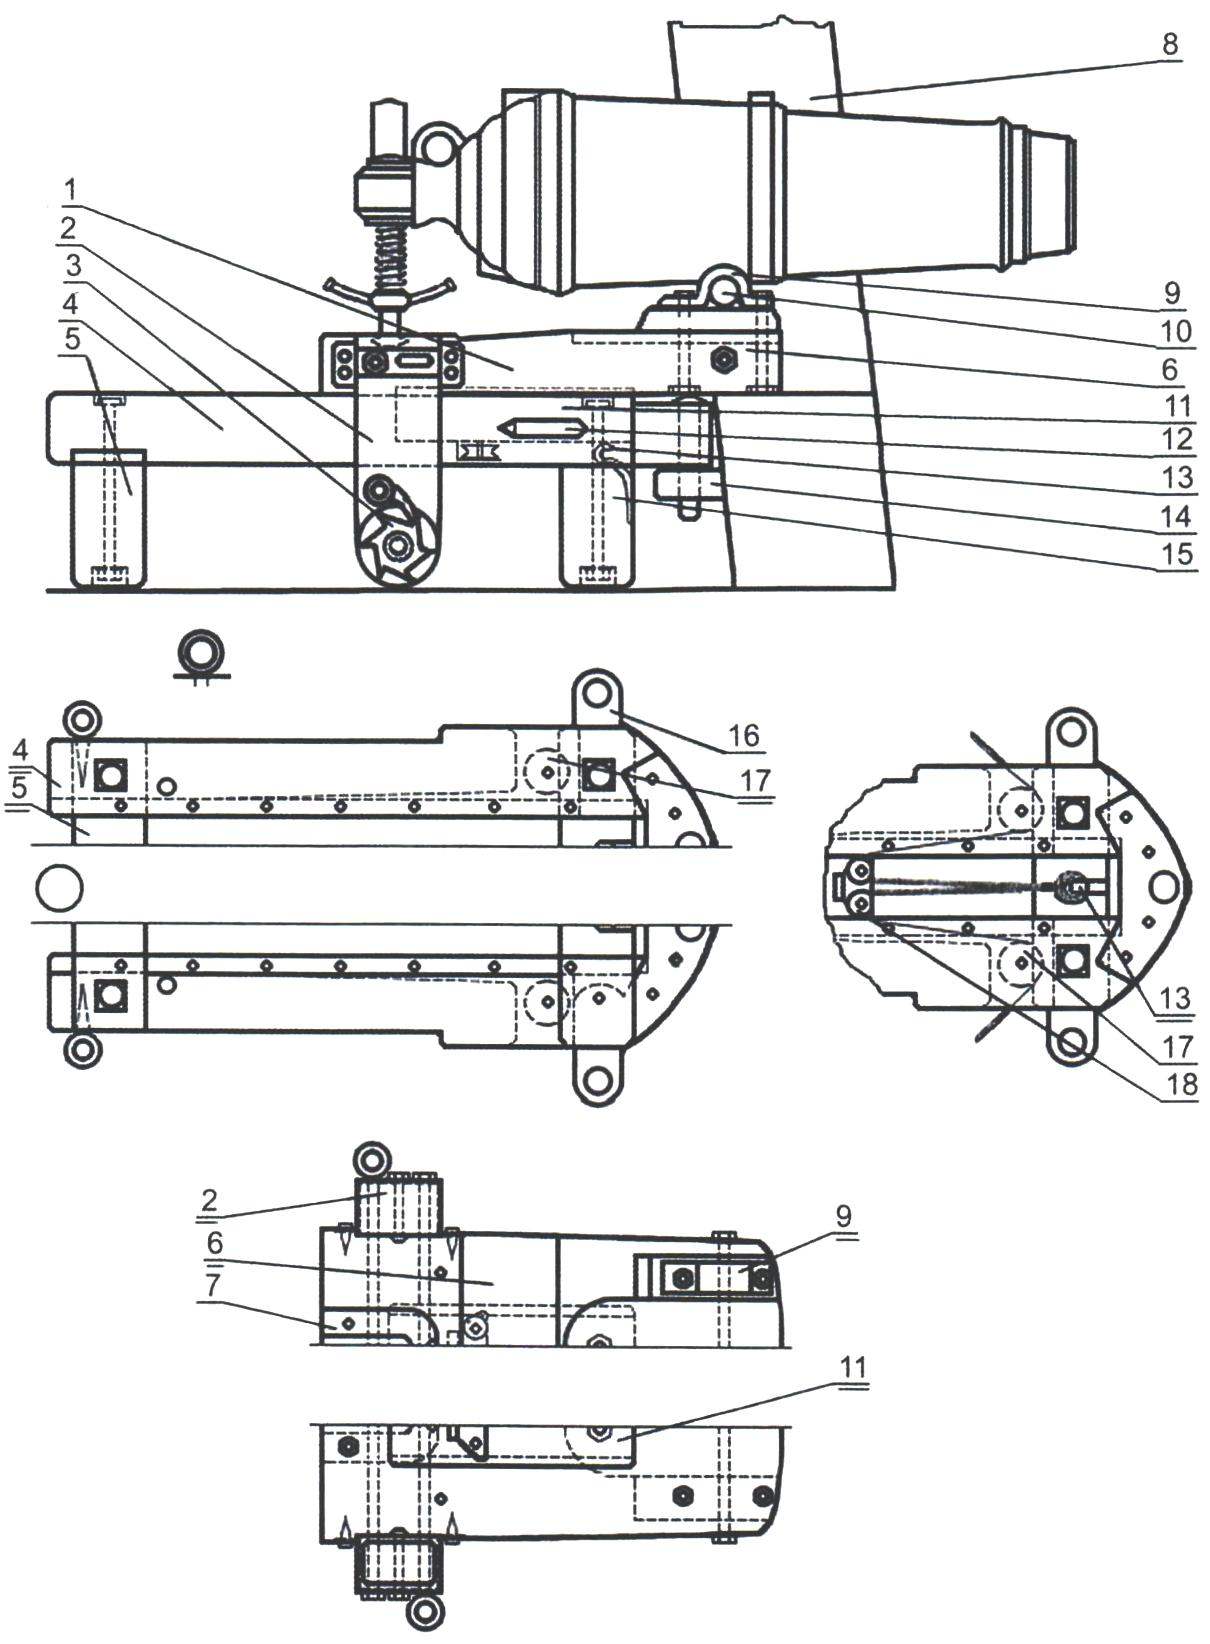 Fig. 5. Machine Borisov for a 24-pound coronada